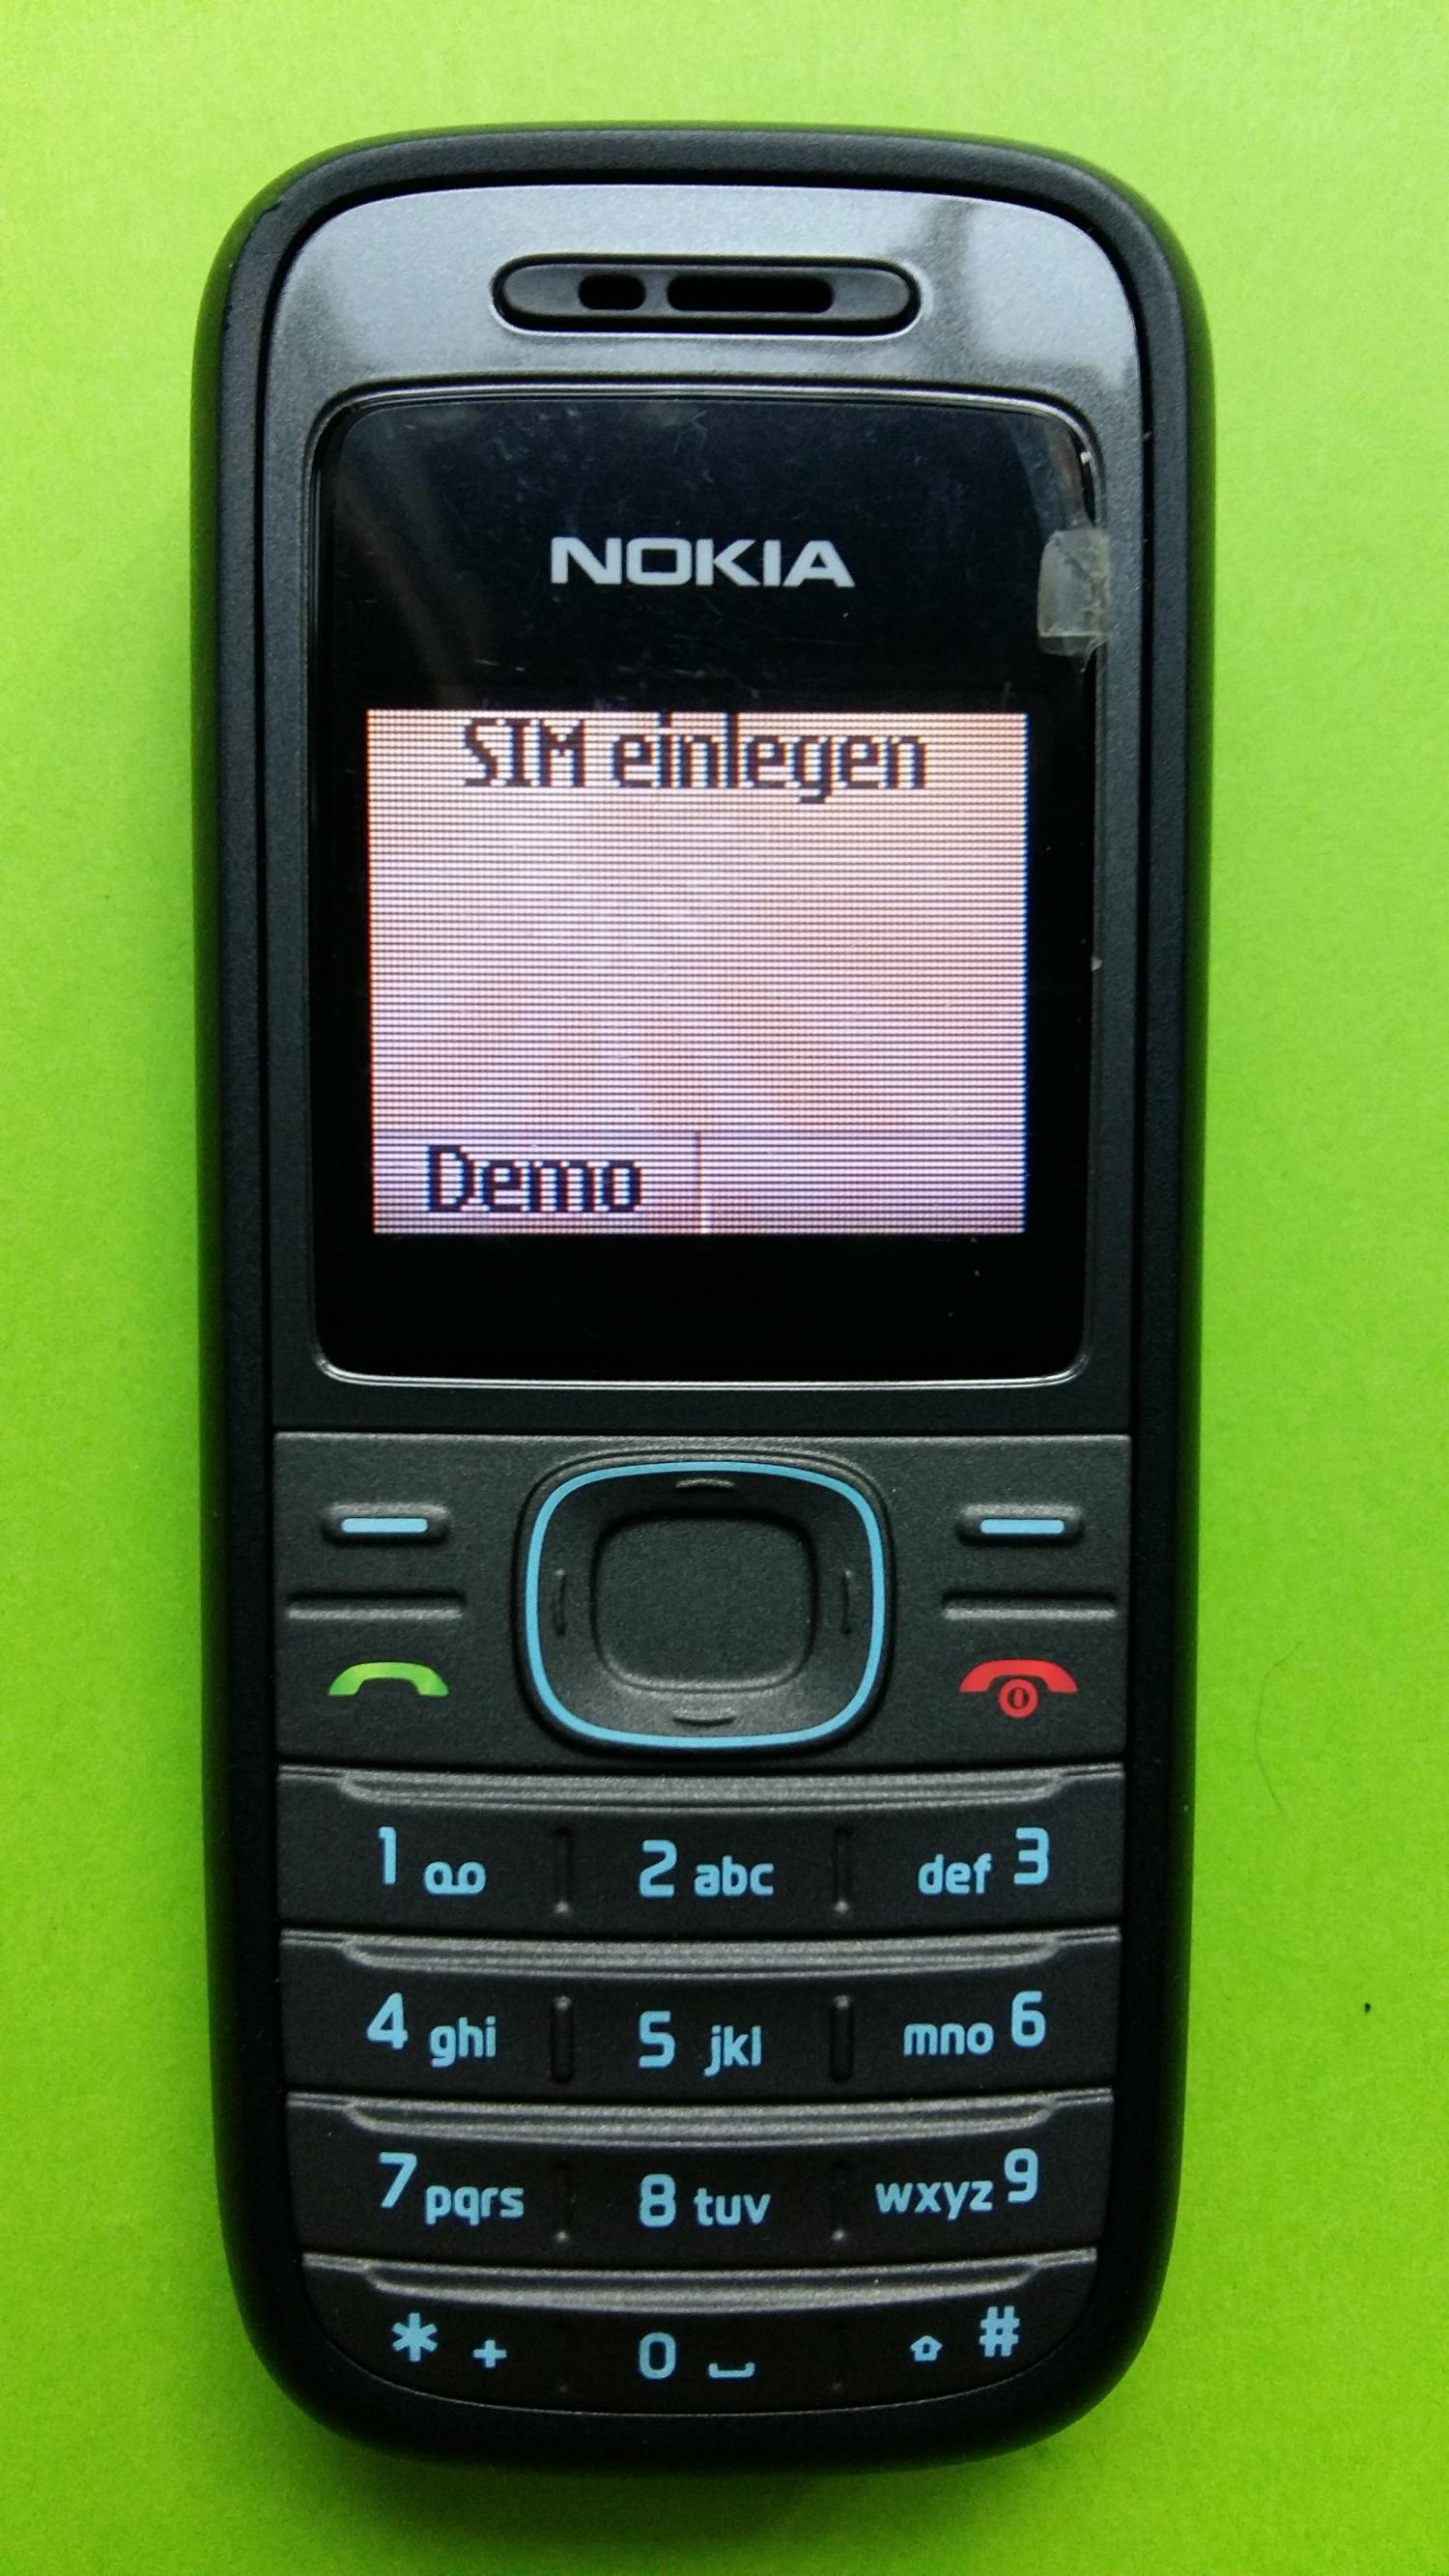 image-7300613-Nokia 1208 (1)1.jpg